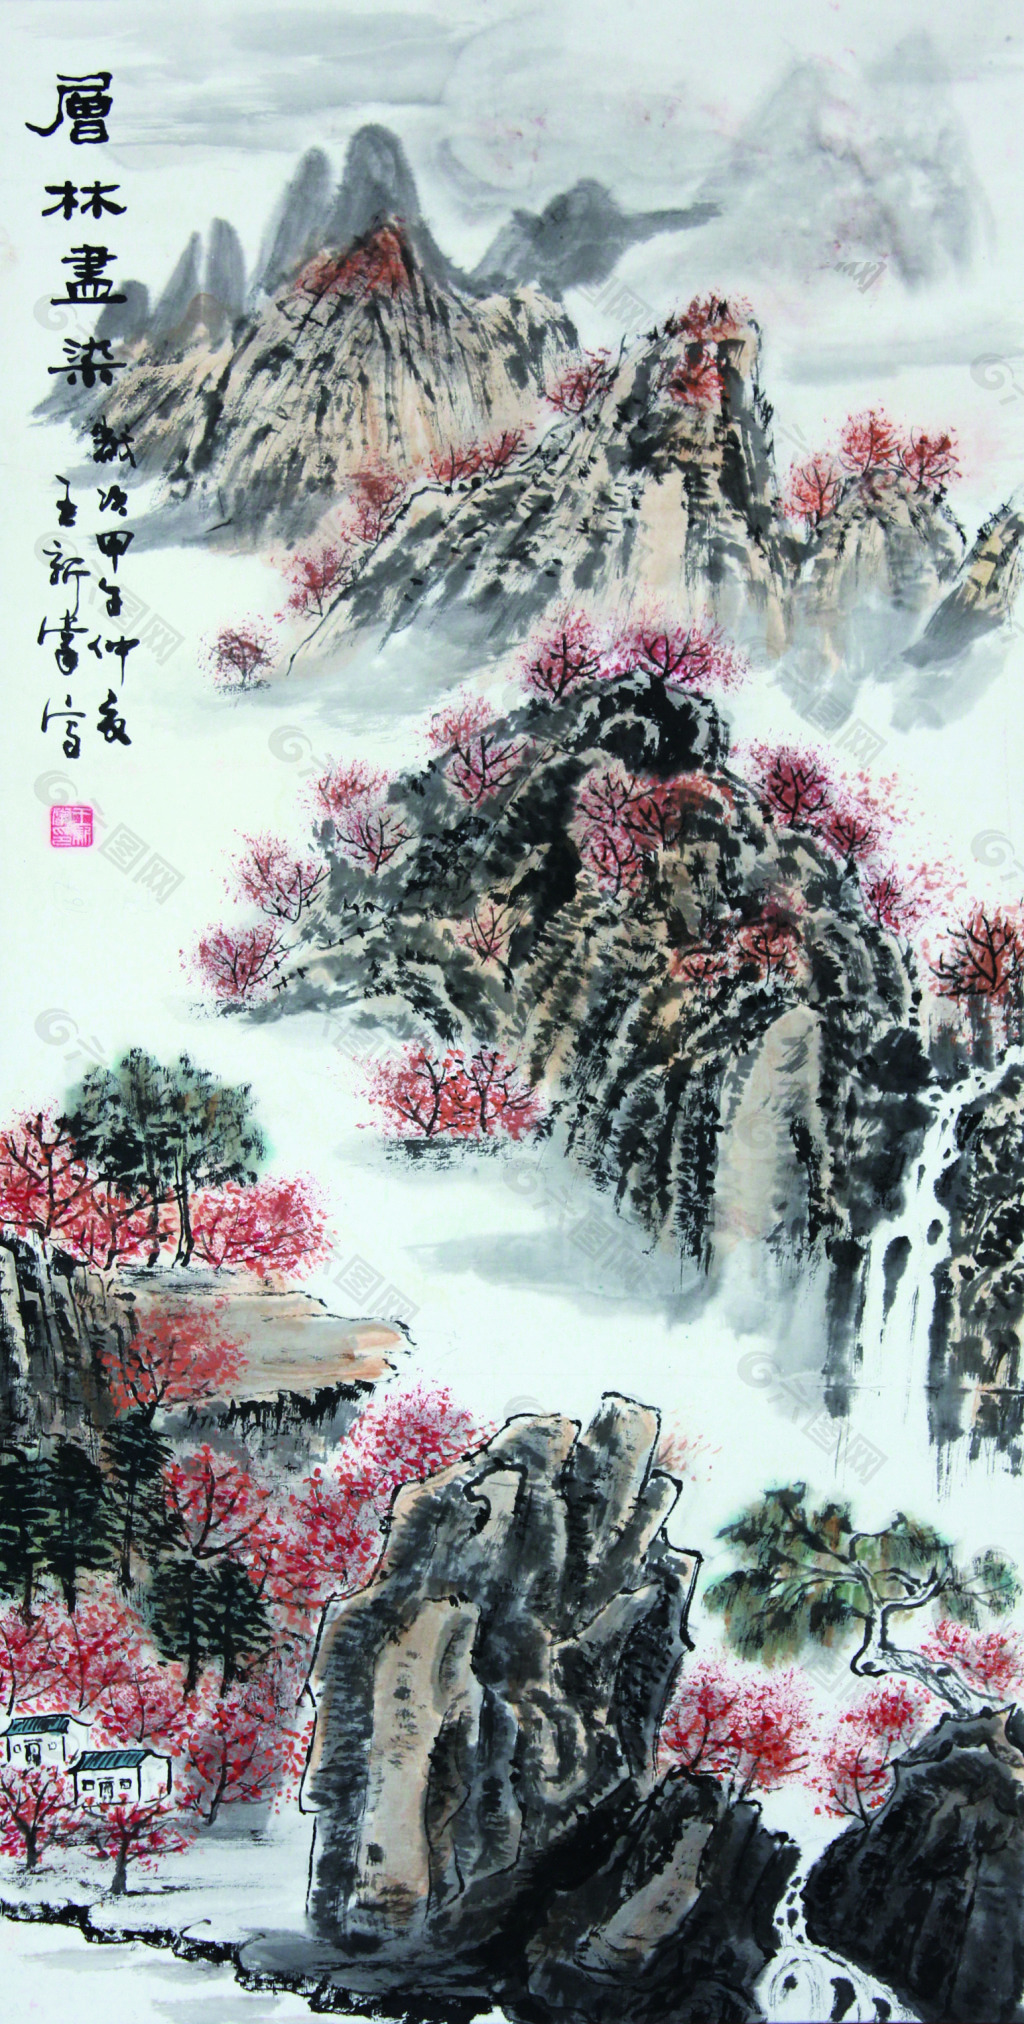 素材模板下载,本次装饰装修 作品主题是 中国画山水树,编号是5208555